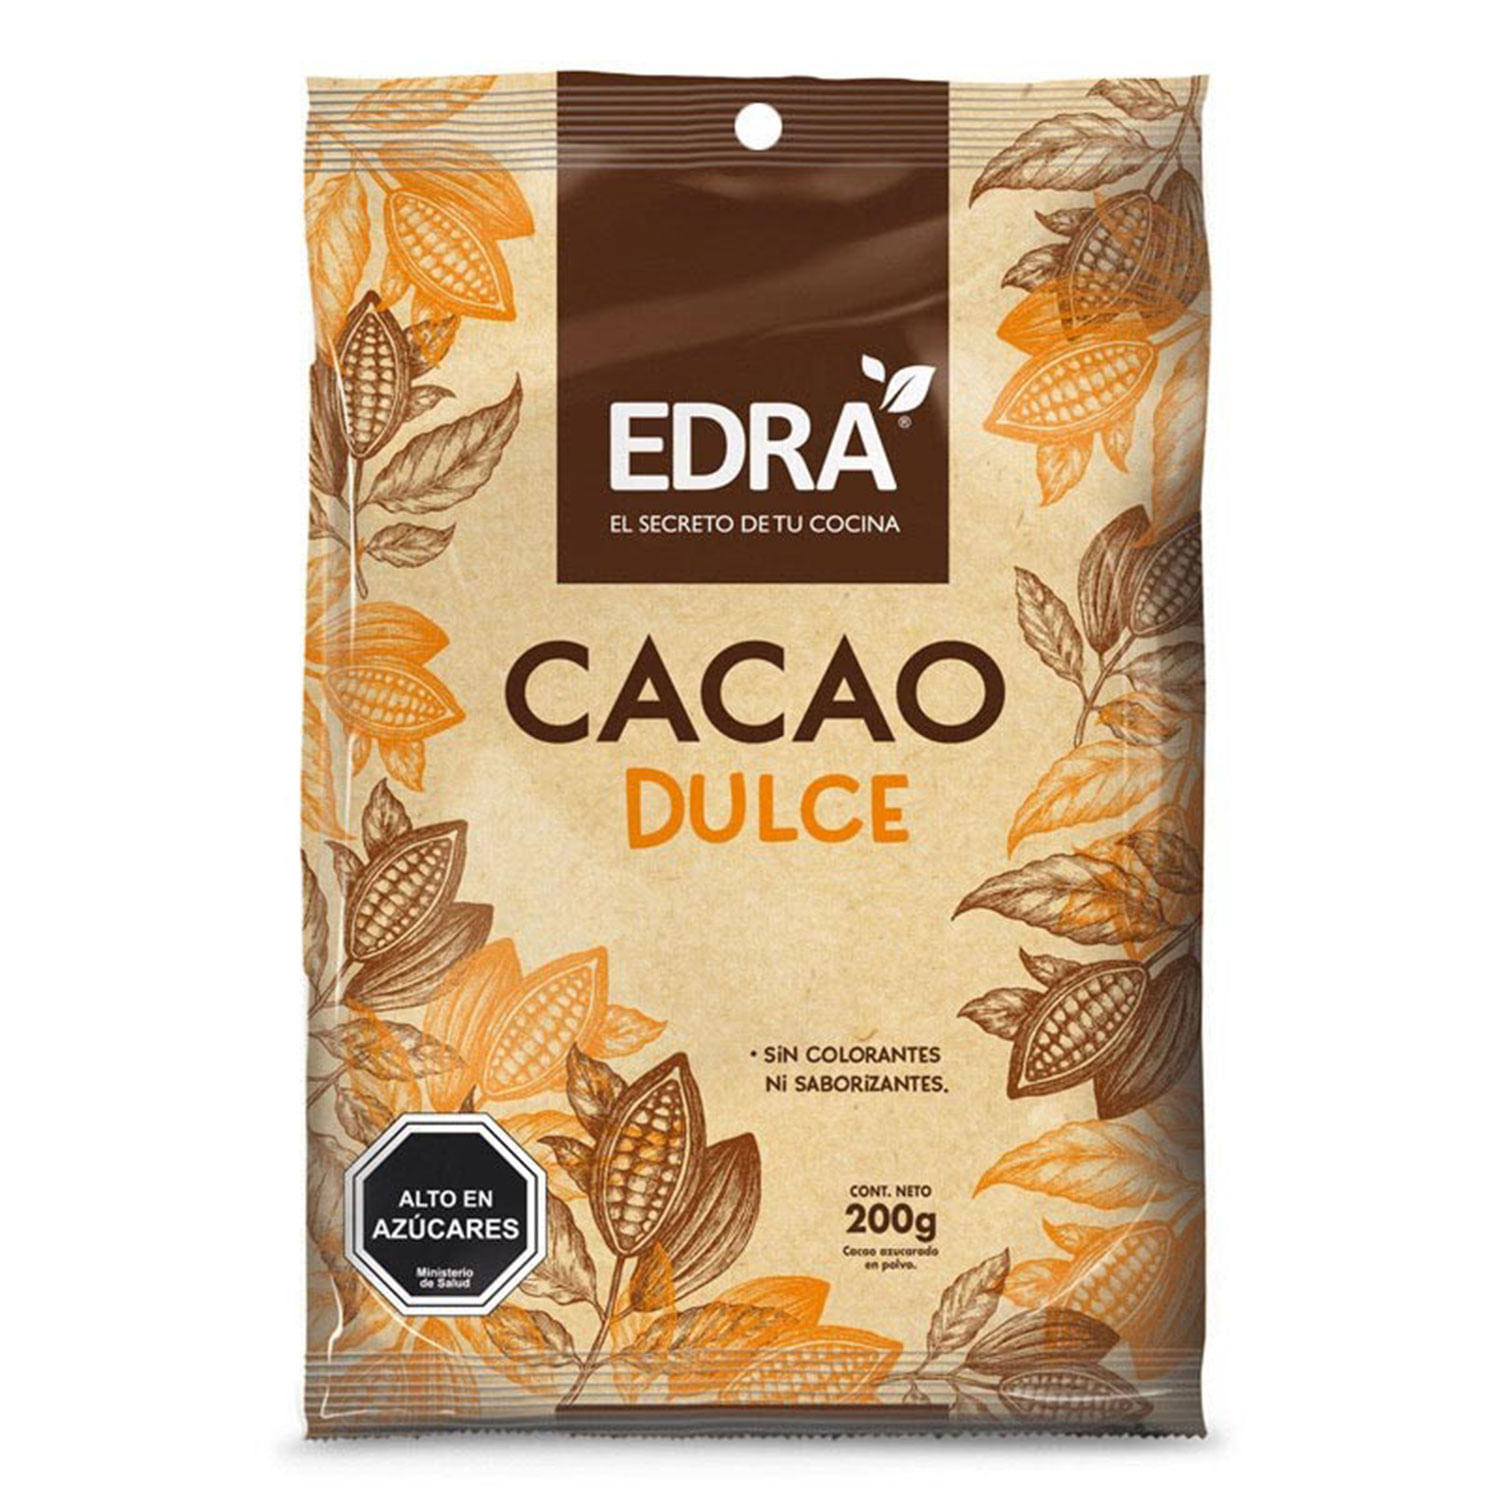 Saborizante De Leche Sin Azúcar Chocolate Tarro, 350 g Nesquik